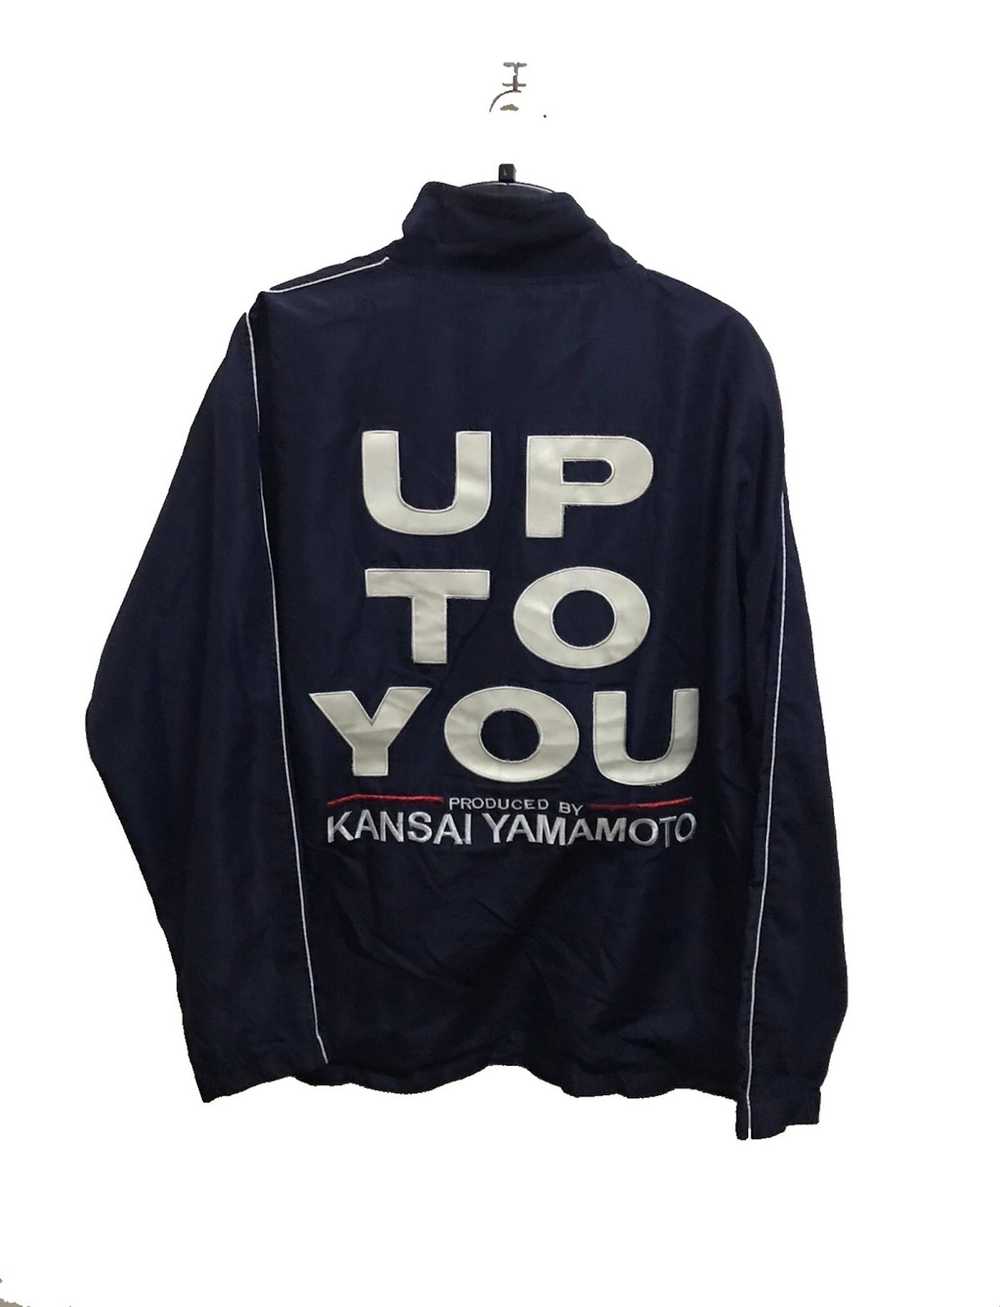 Vintage Kansai Yamamoto 02 Cardigan Zip Sweater Card Motif Made in Japan  Medium